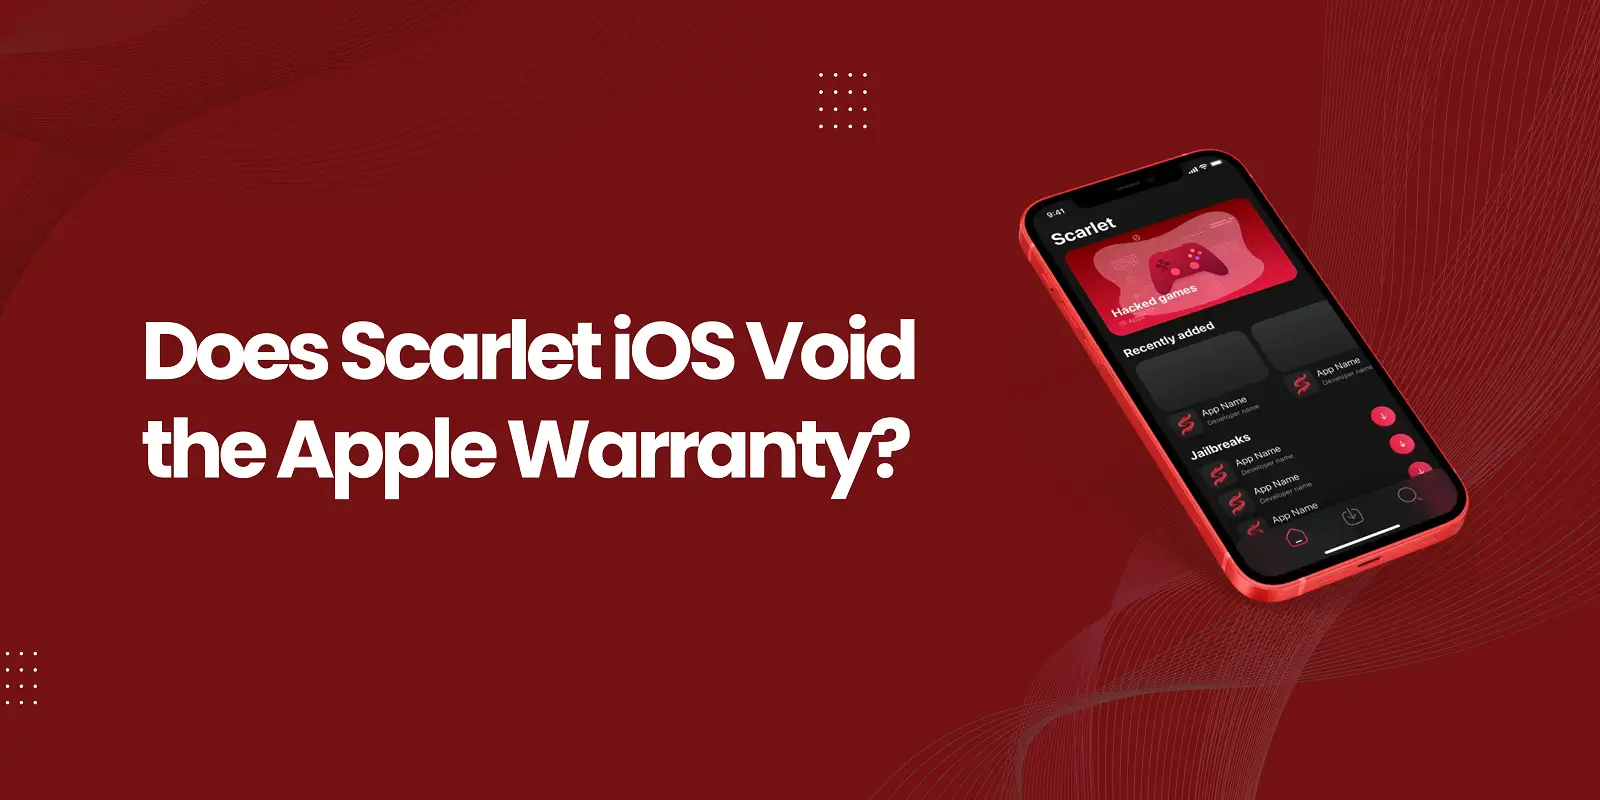 O Scarlet iOS anula a garantia da Apple?